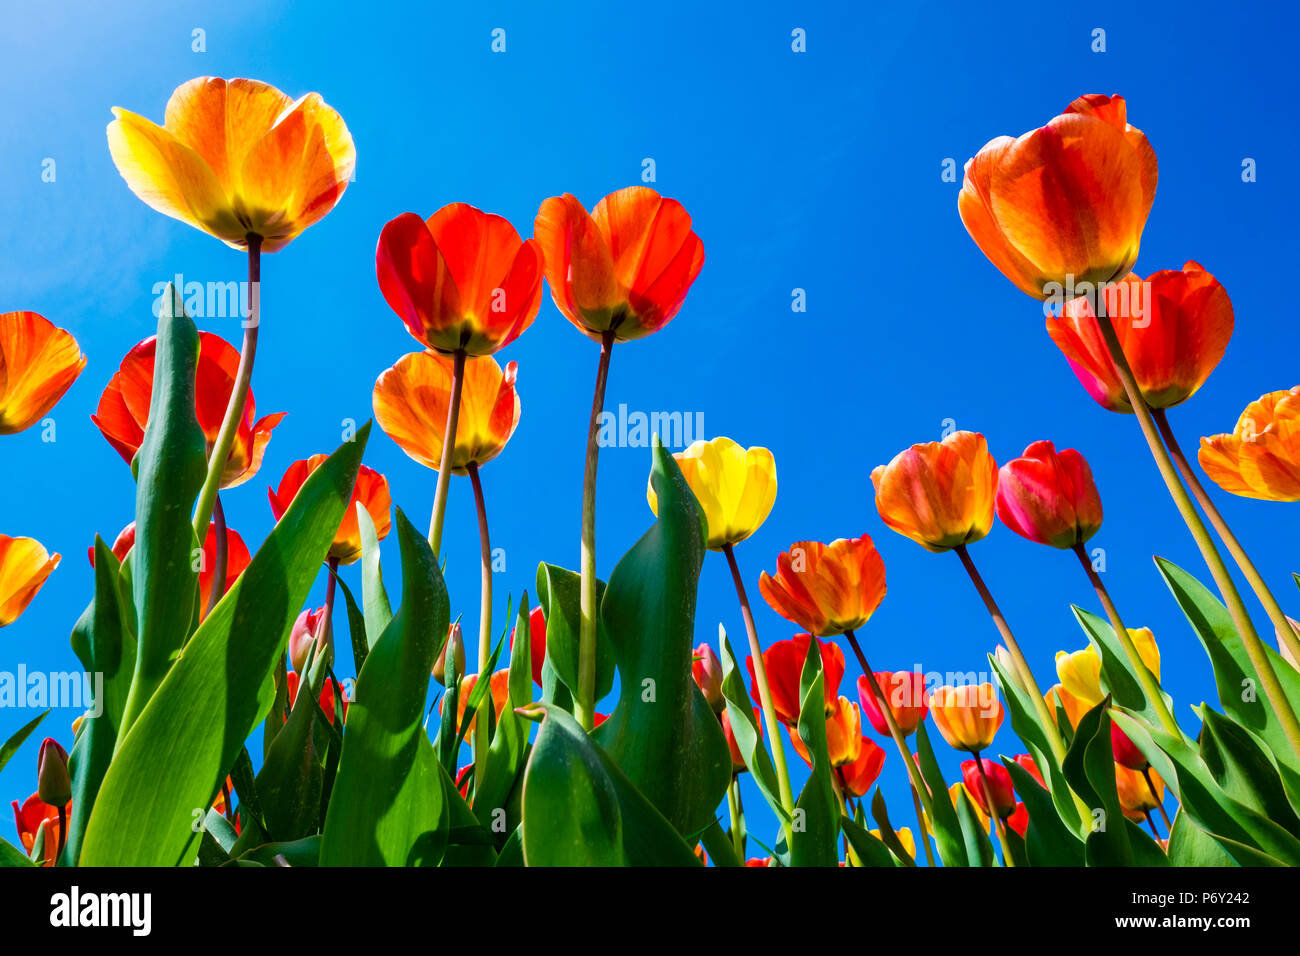 Pays Bas, Hollande du Nord, Callantsoog. Tulipes fleur multicolore contre un ciel bleu, près du village de Zipje. Banque D'Images